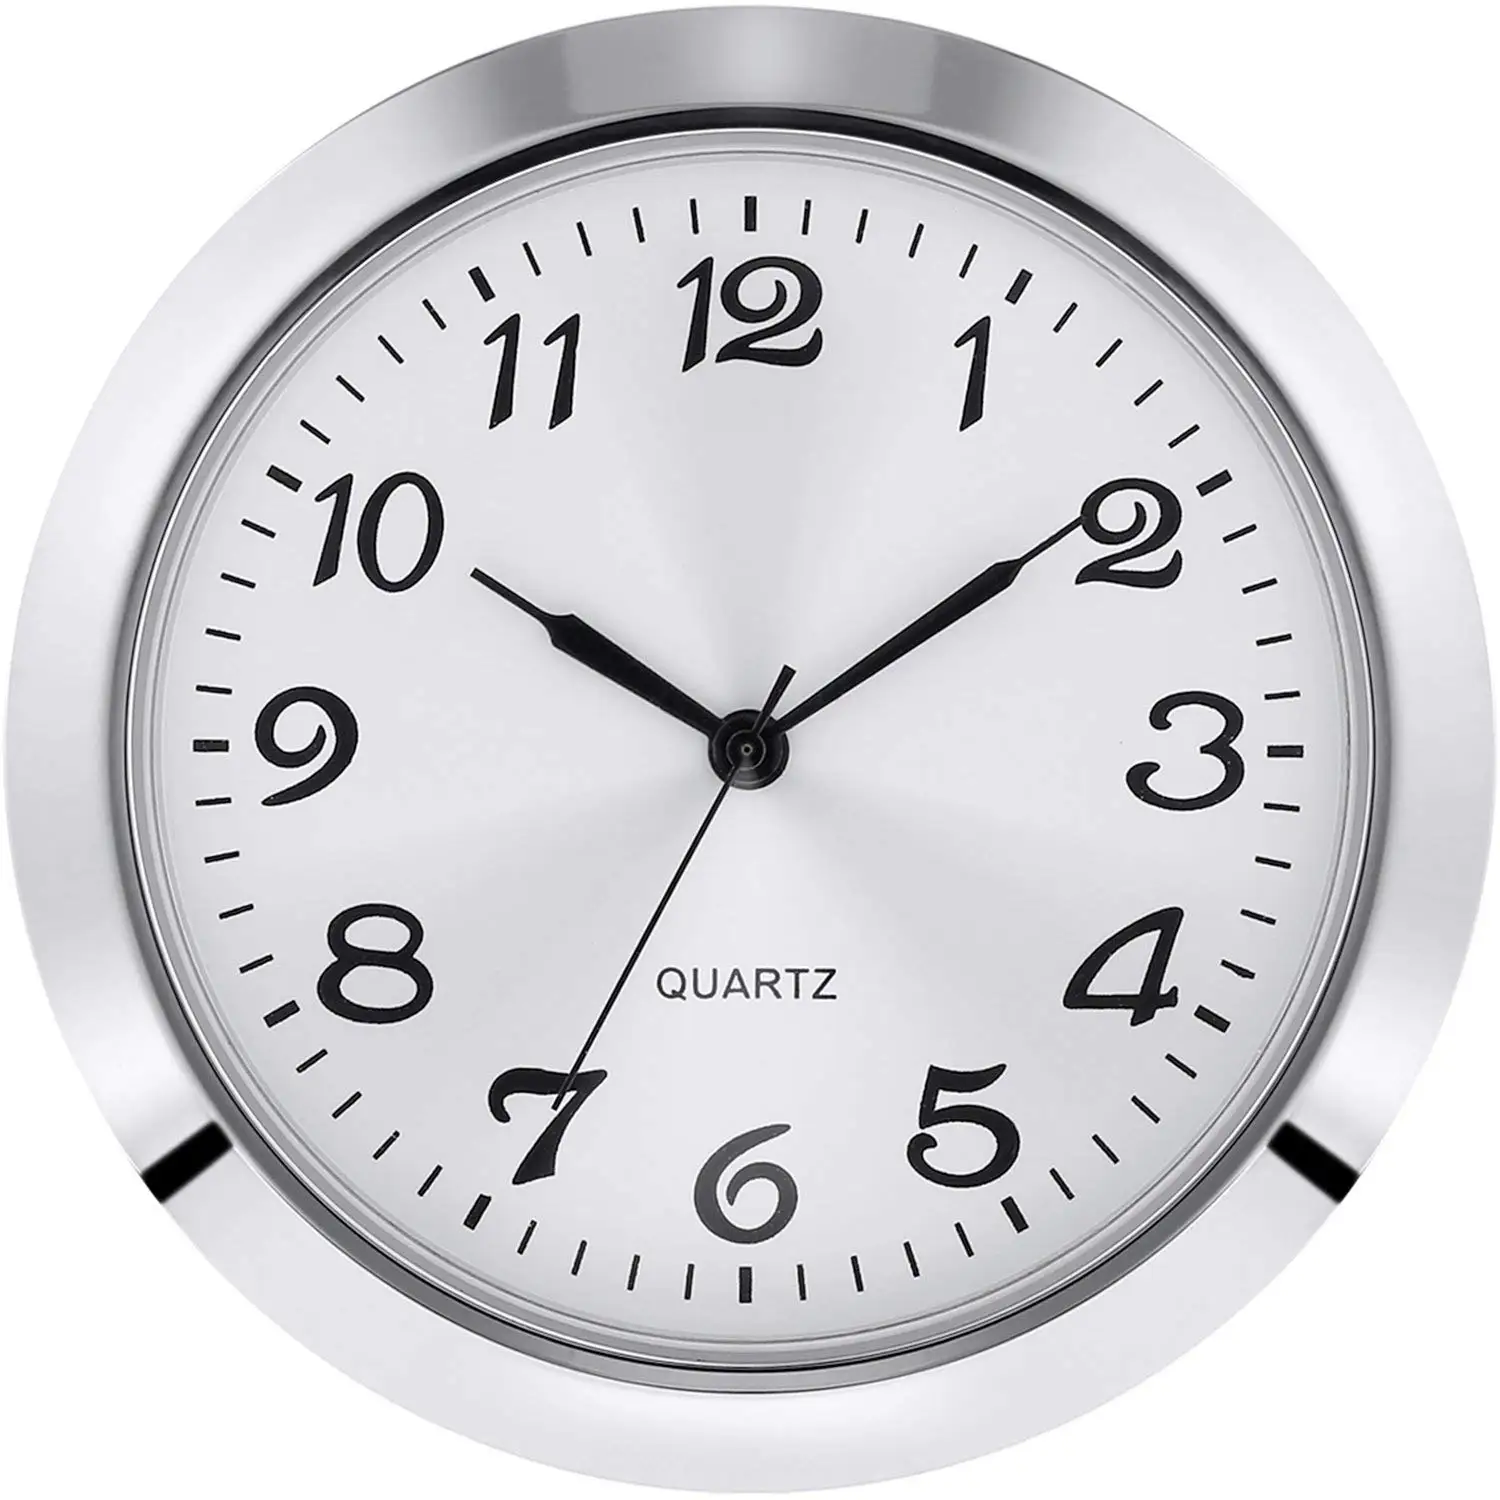 10 pcs 65mm quartz clock inserts